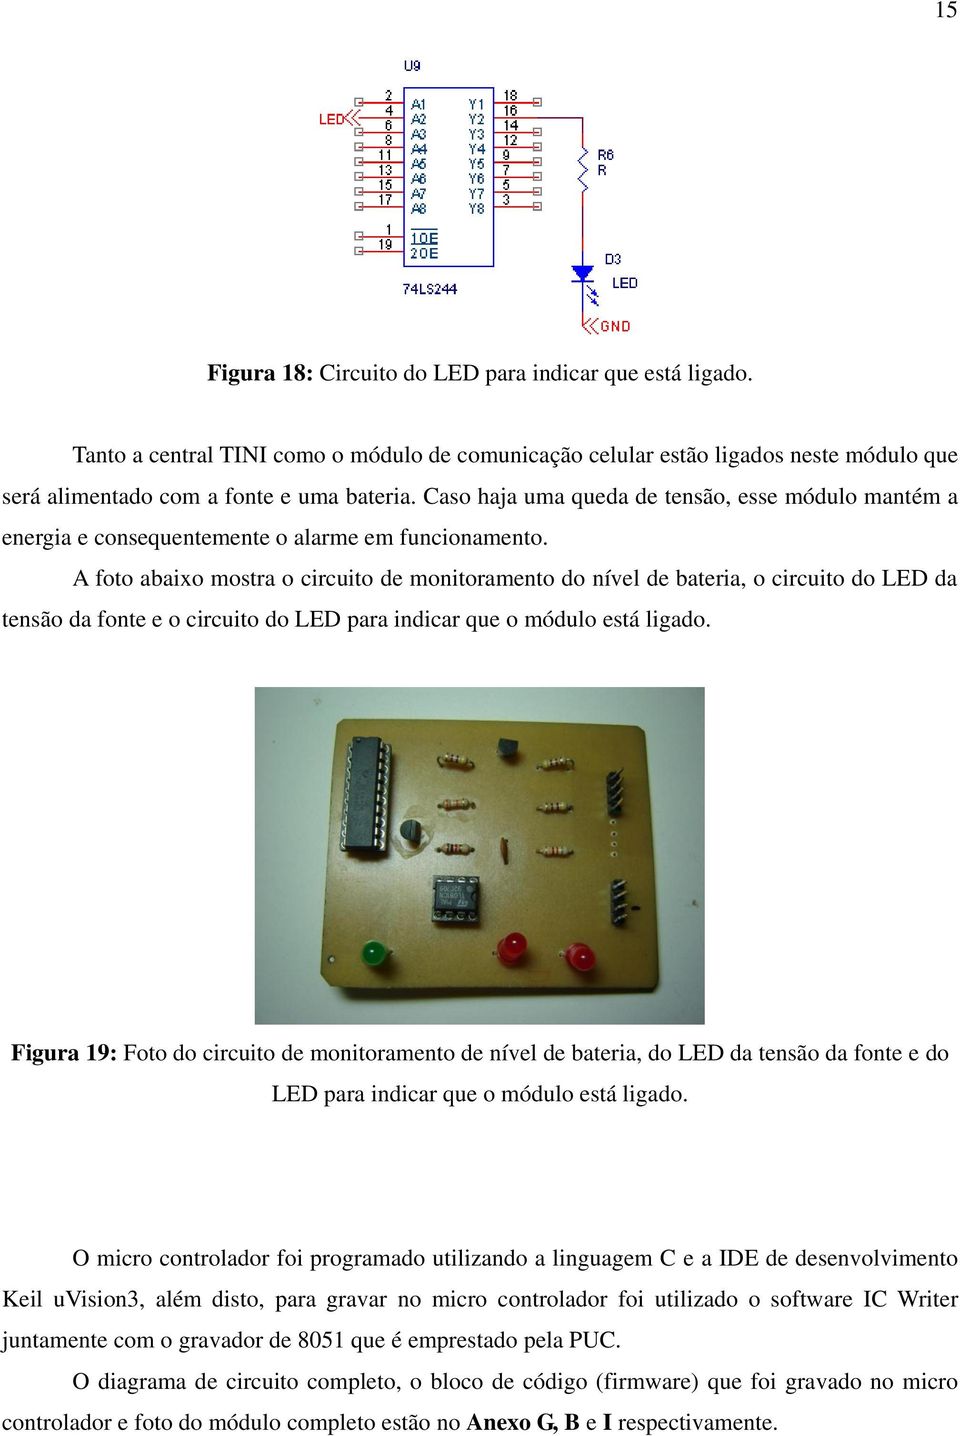 A foto abaixo mostra o circuito de monitoramento do nível de bateria, o circuito do LED da tensão da fonte e o circuito do LED para indicar que o módulo está ligado.